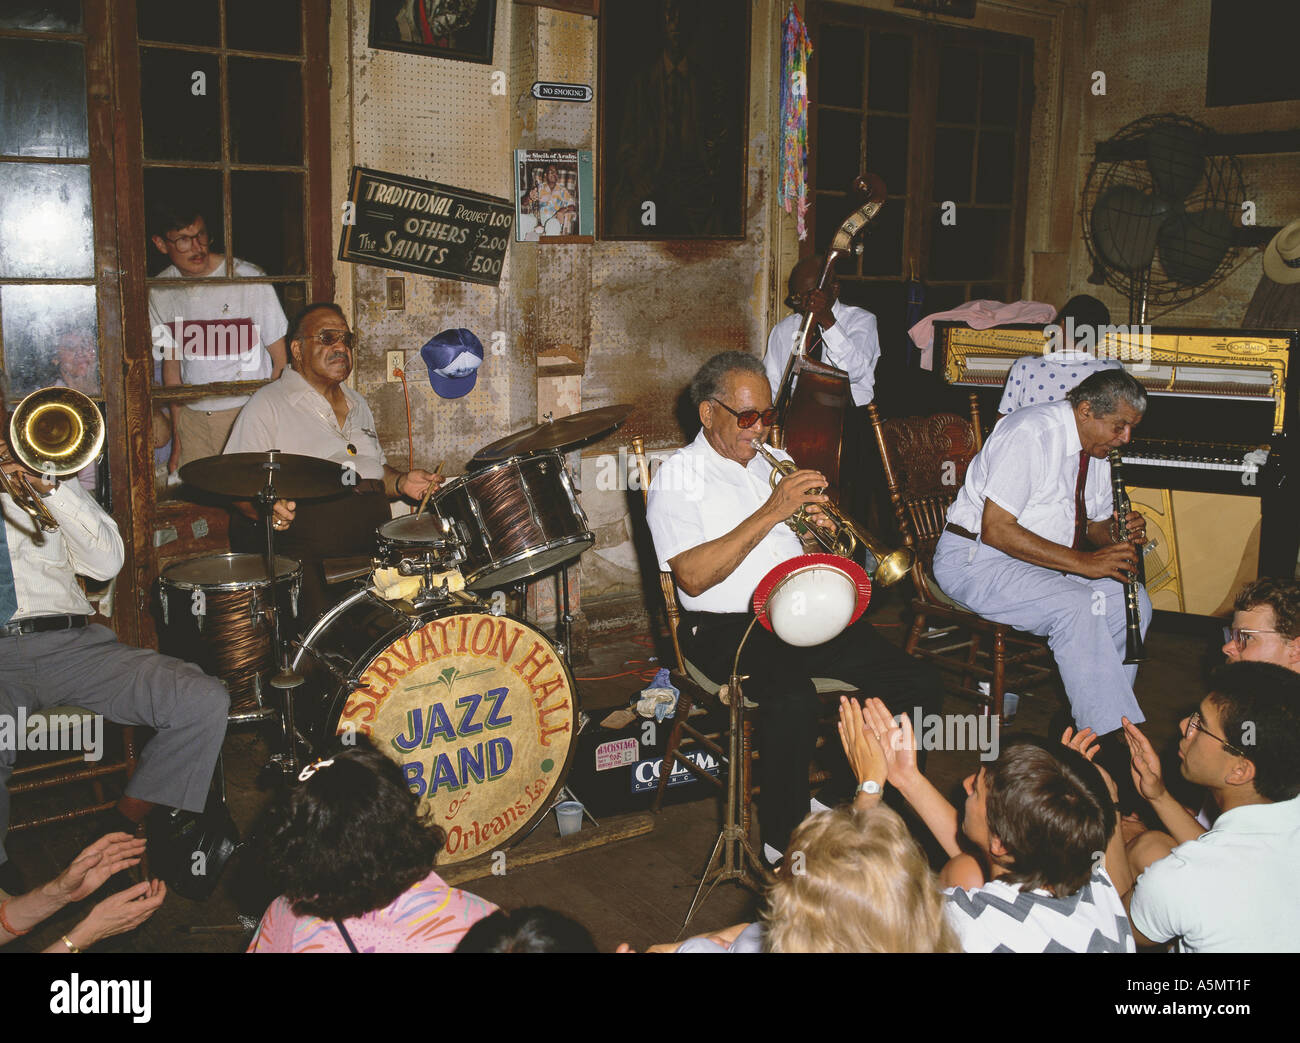 Jazz Band tocando en el Historic Preservation Hall en Bourbon Street, Nueva Orleans, Louisiana, EE.UU. Foto de stock